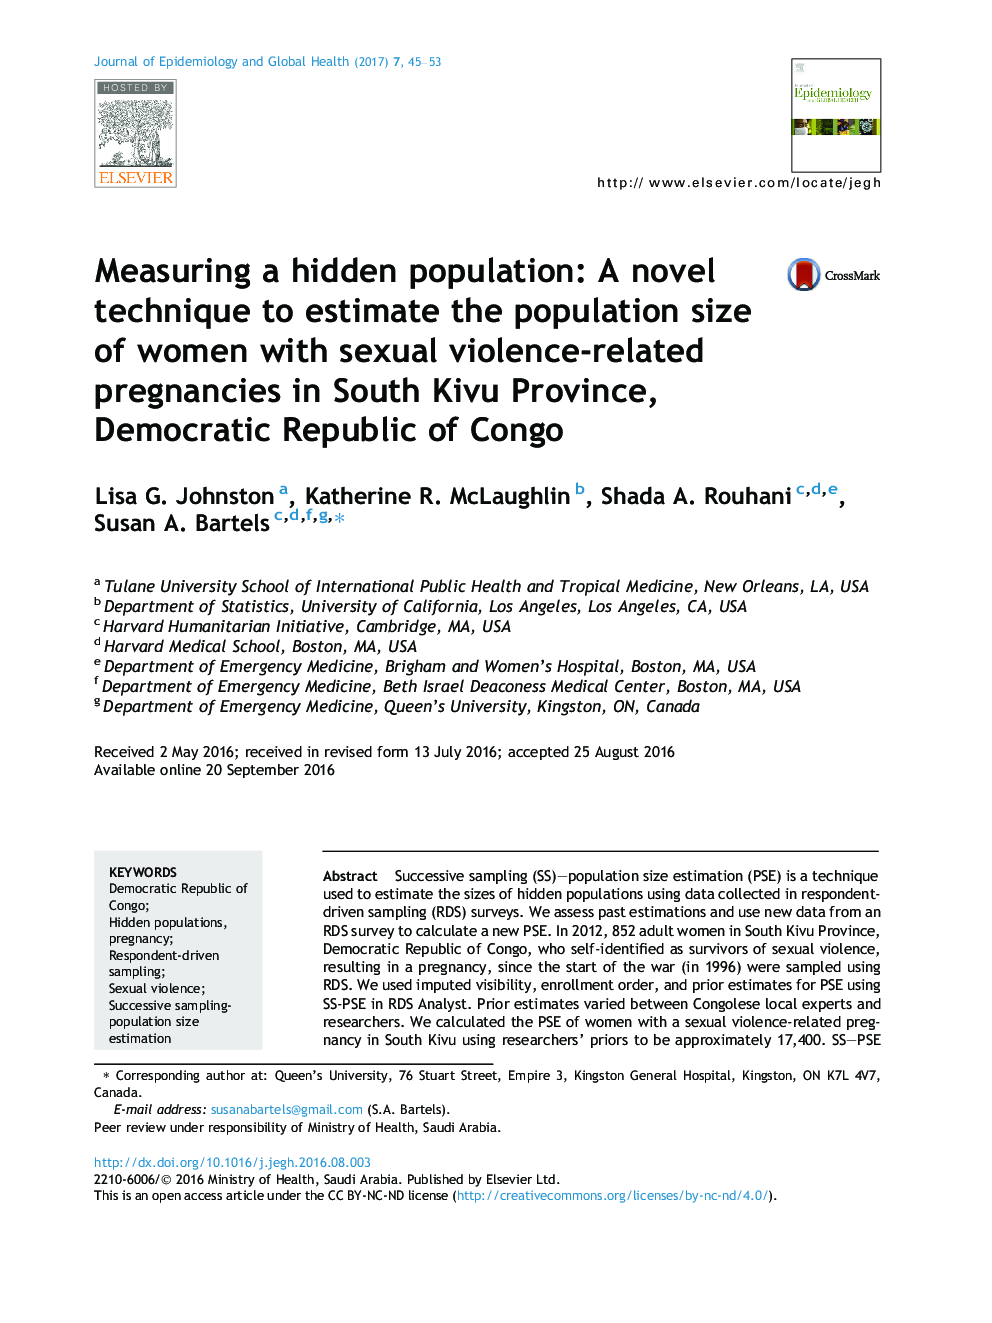 اندازه گیری جمعیت پنهان: یک روش جدید برای برآورد میزان جمعیت زنان باردار مرتبط با خشونت جنسی در استان کایو جنوبی، جمهوری دموکراتیک کنگو